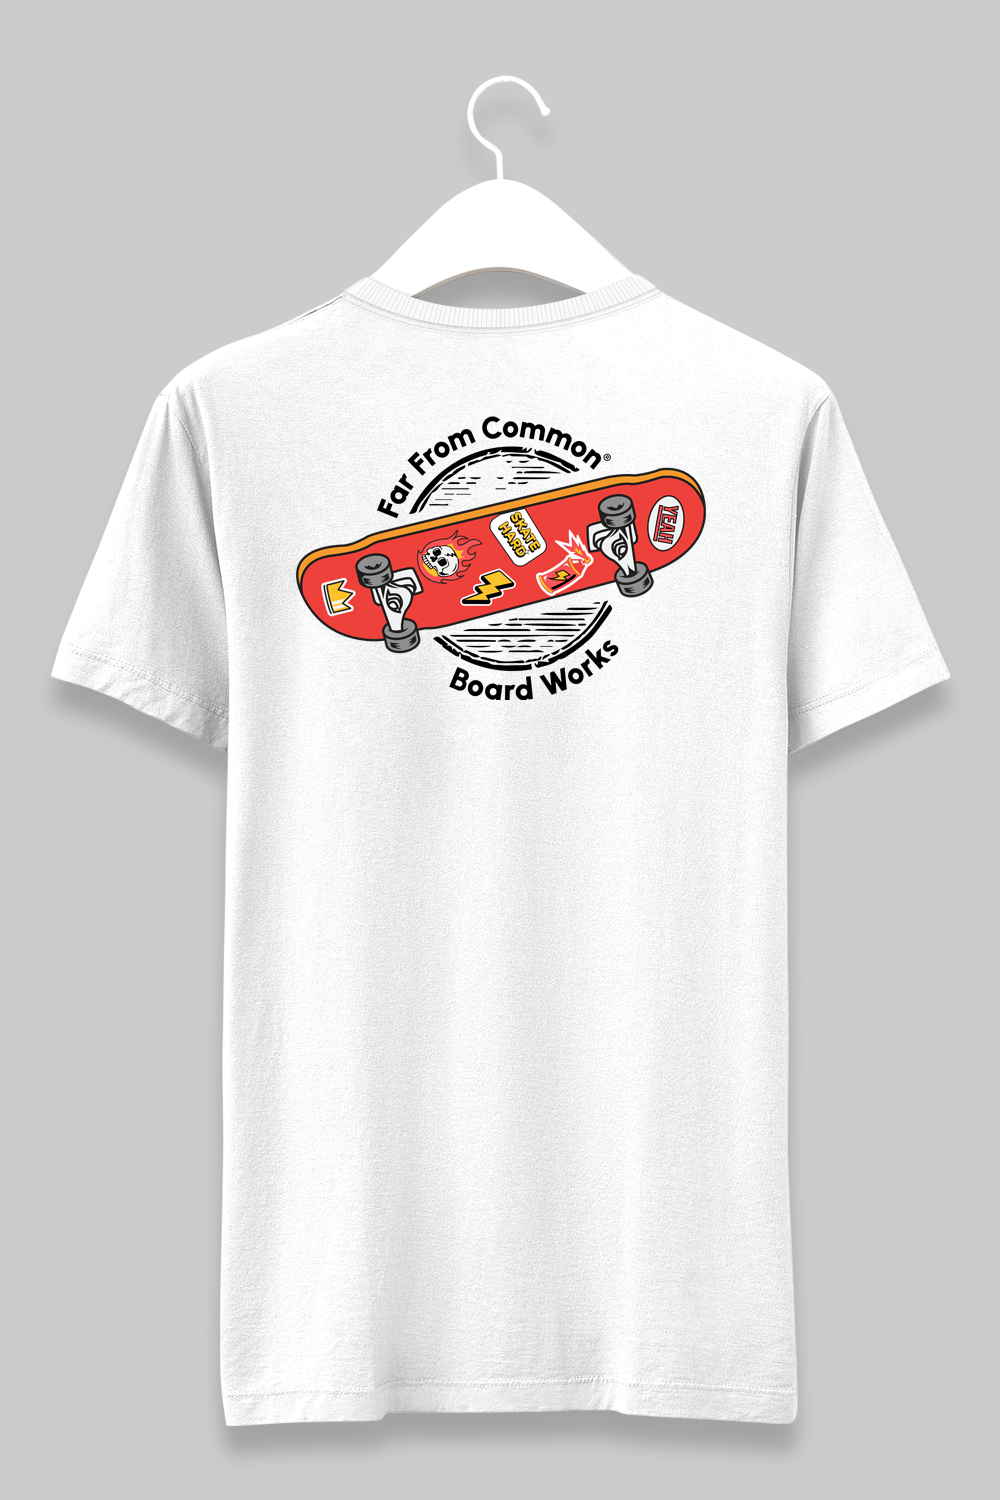 Skateboard Works Unisex White T-shirt